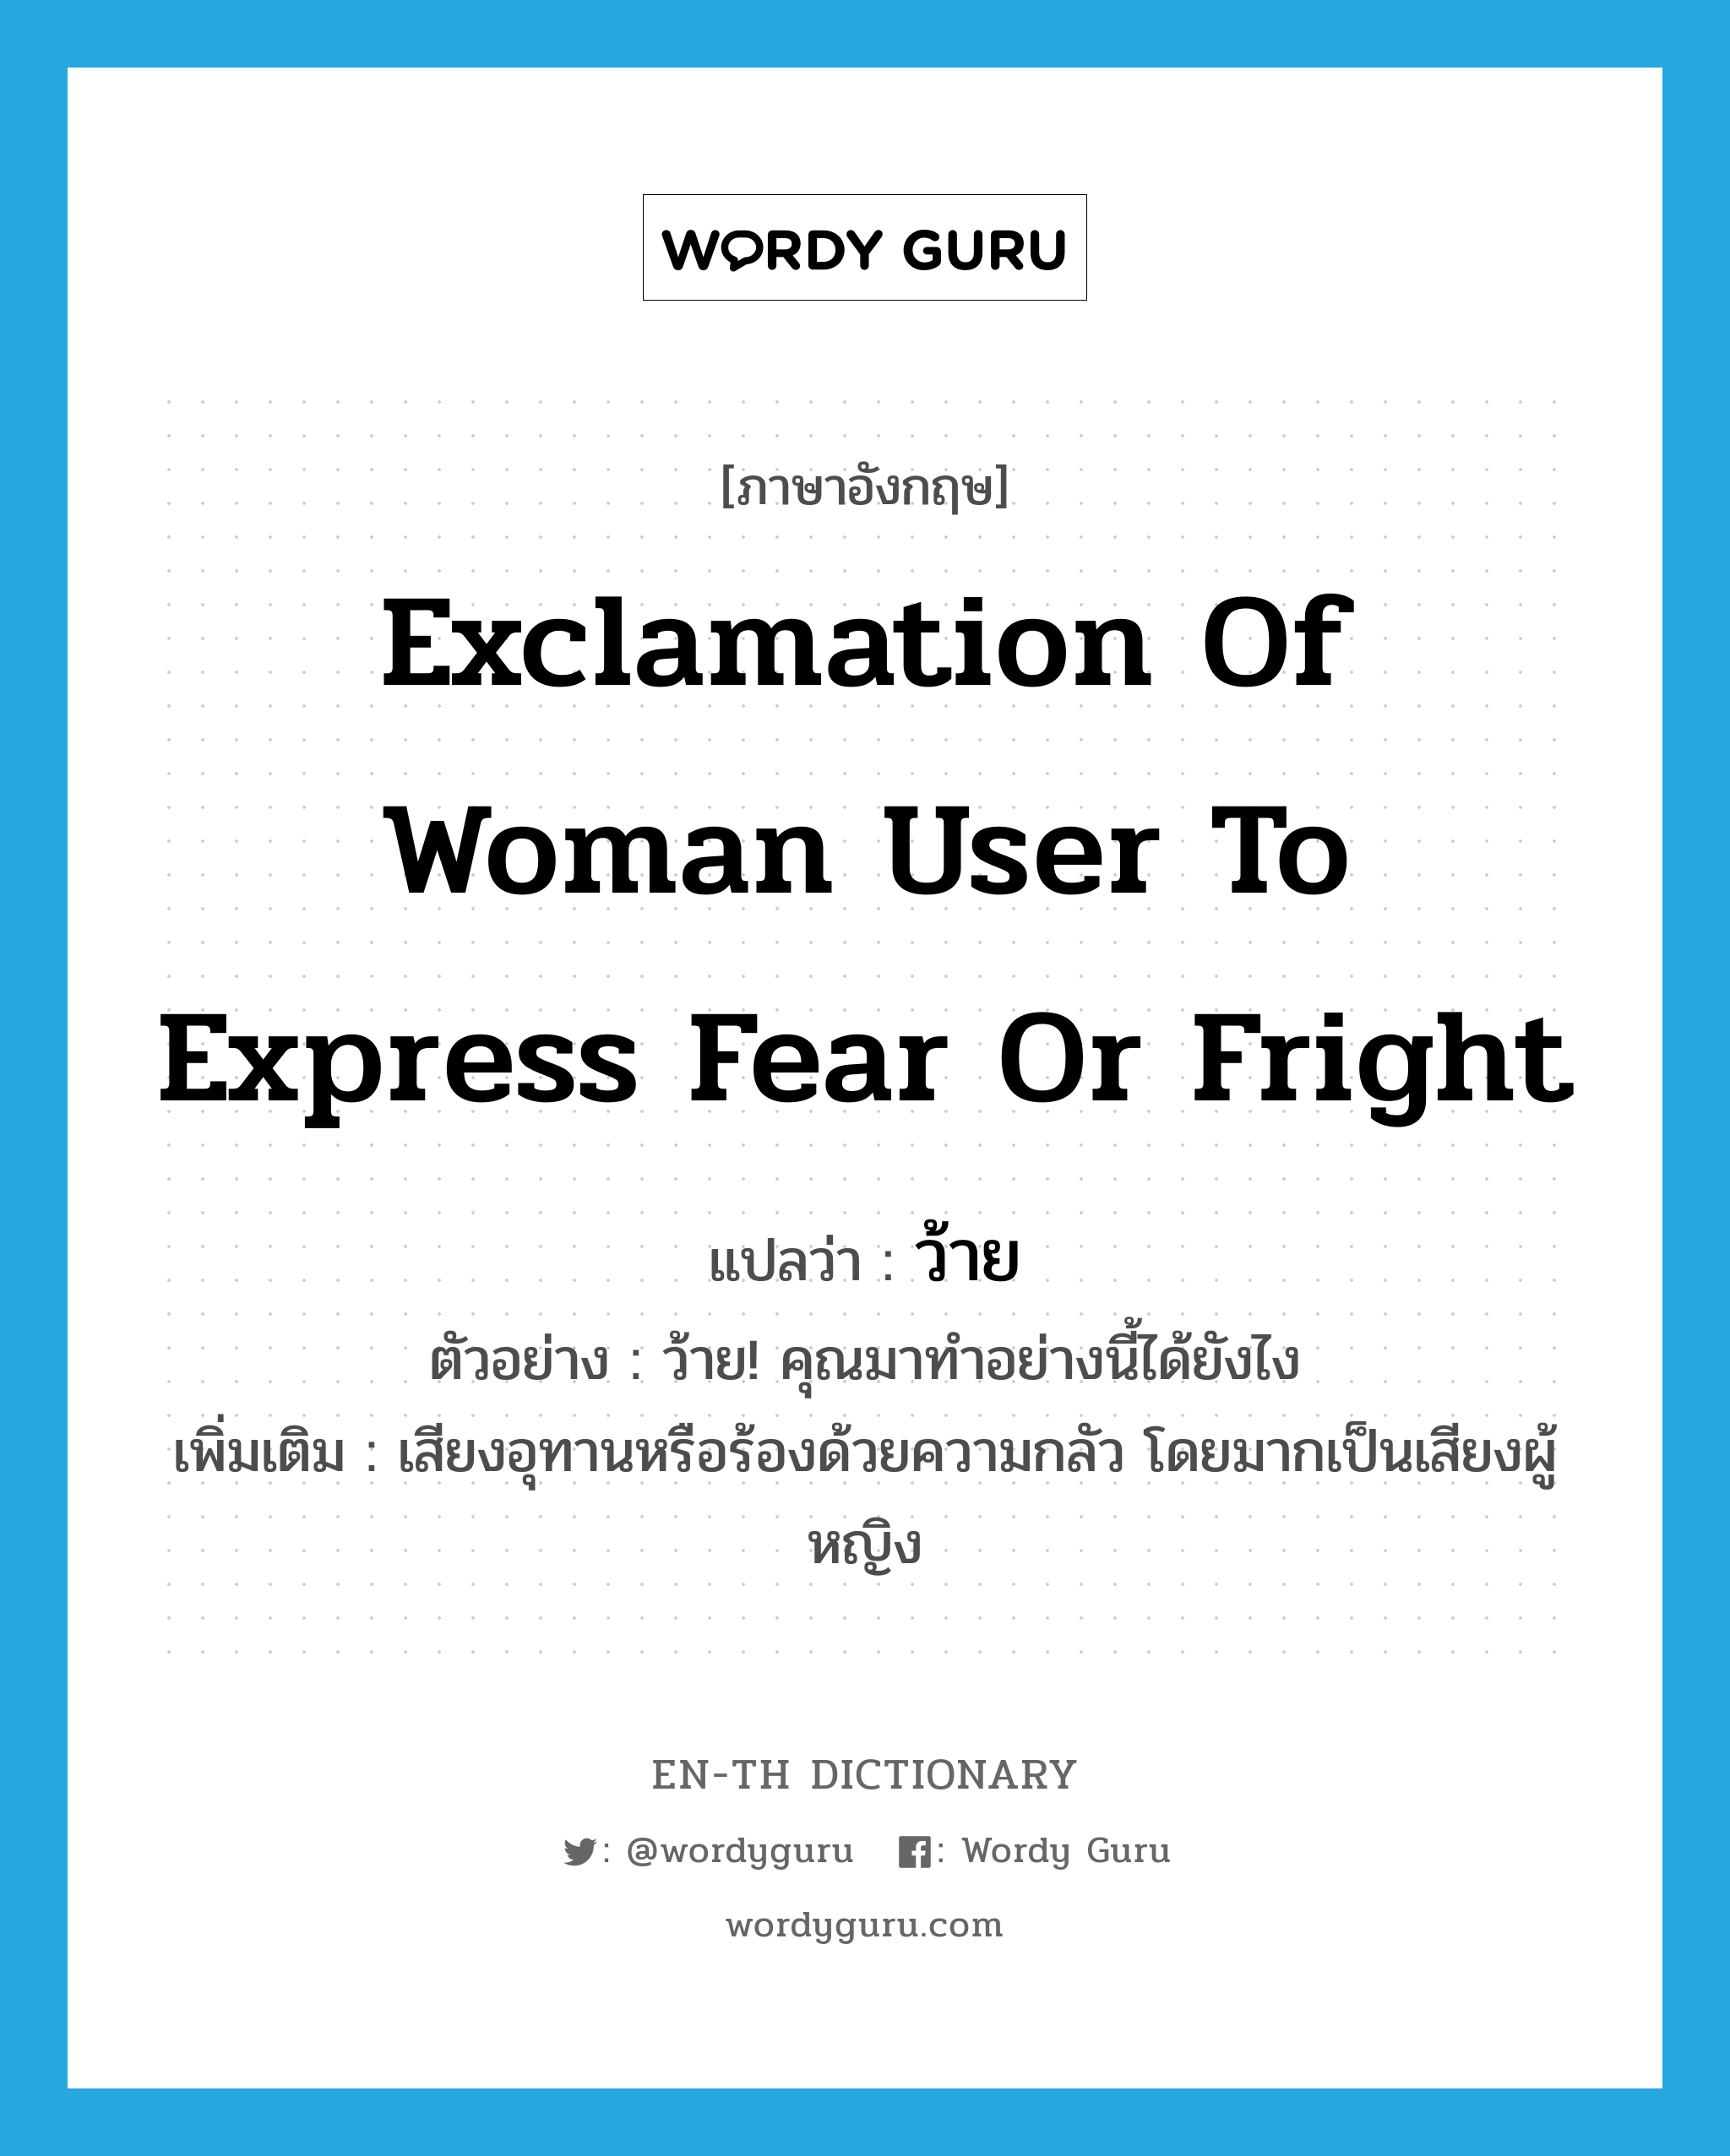 ว้าย ภาษาอังกฤษ?, คำศัพท์ภาษาอังกฤษ ว้าย แปลว่า exclamation of woman user to express fear or fright ประเภท INT ตัวอย่าง ว้าย! คุณมาทำอย่างนี้ได้ยังไง เพิ่มเติม เสียงอุทานหรือร้องด้วยความกลัว โดยมากเป็นเสียงผู้หญิง หมวด INT